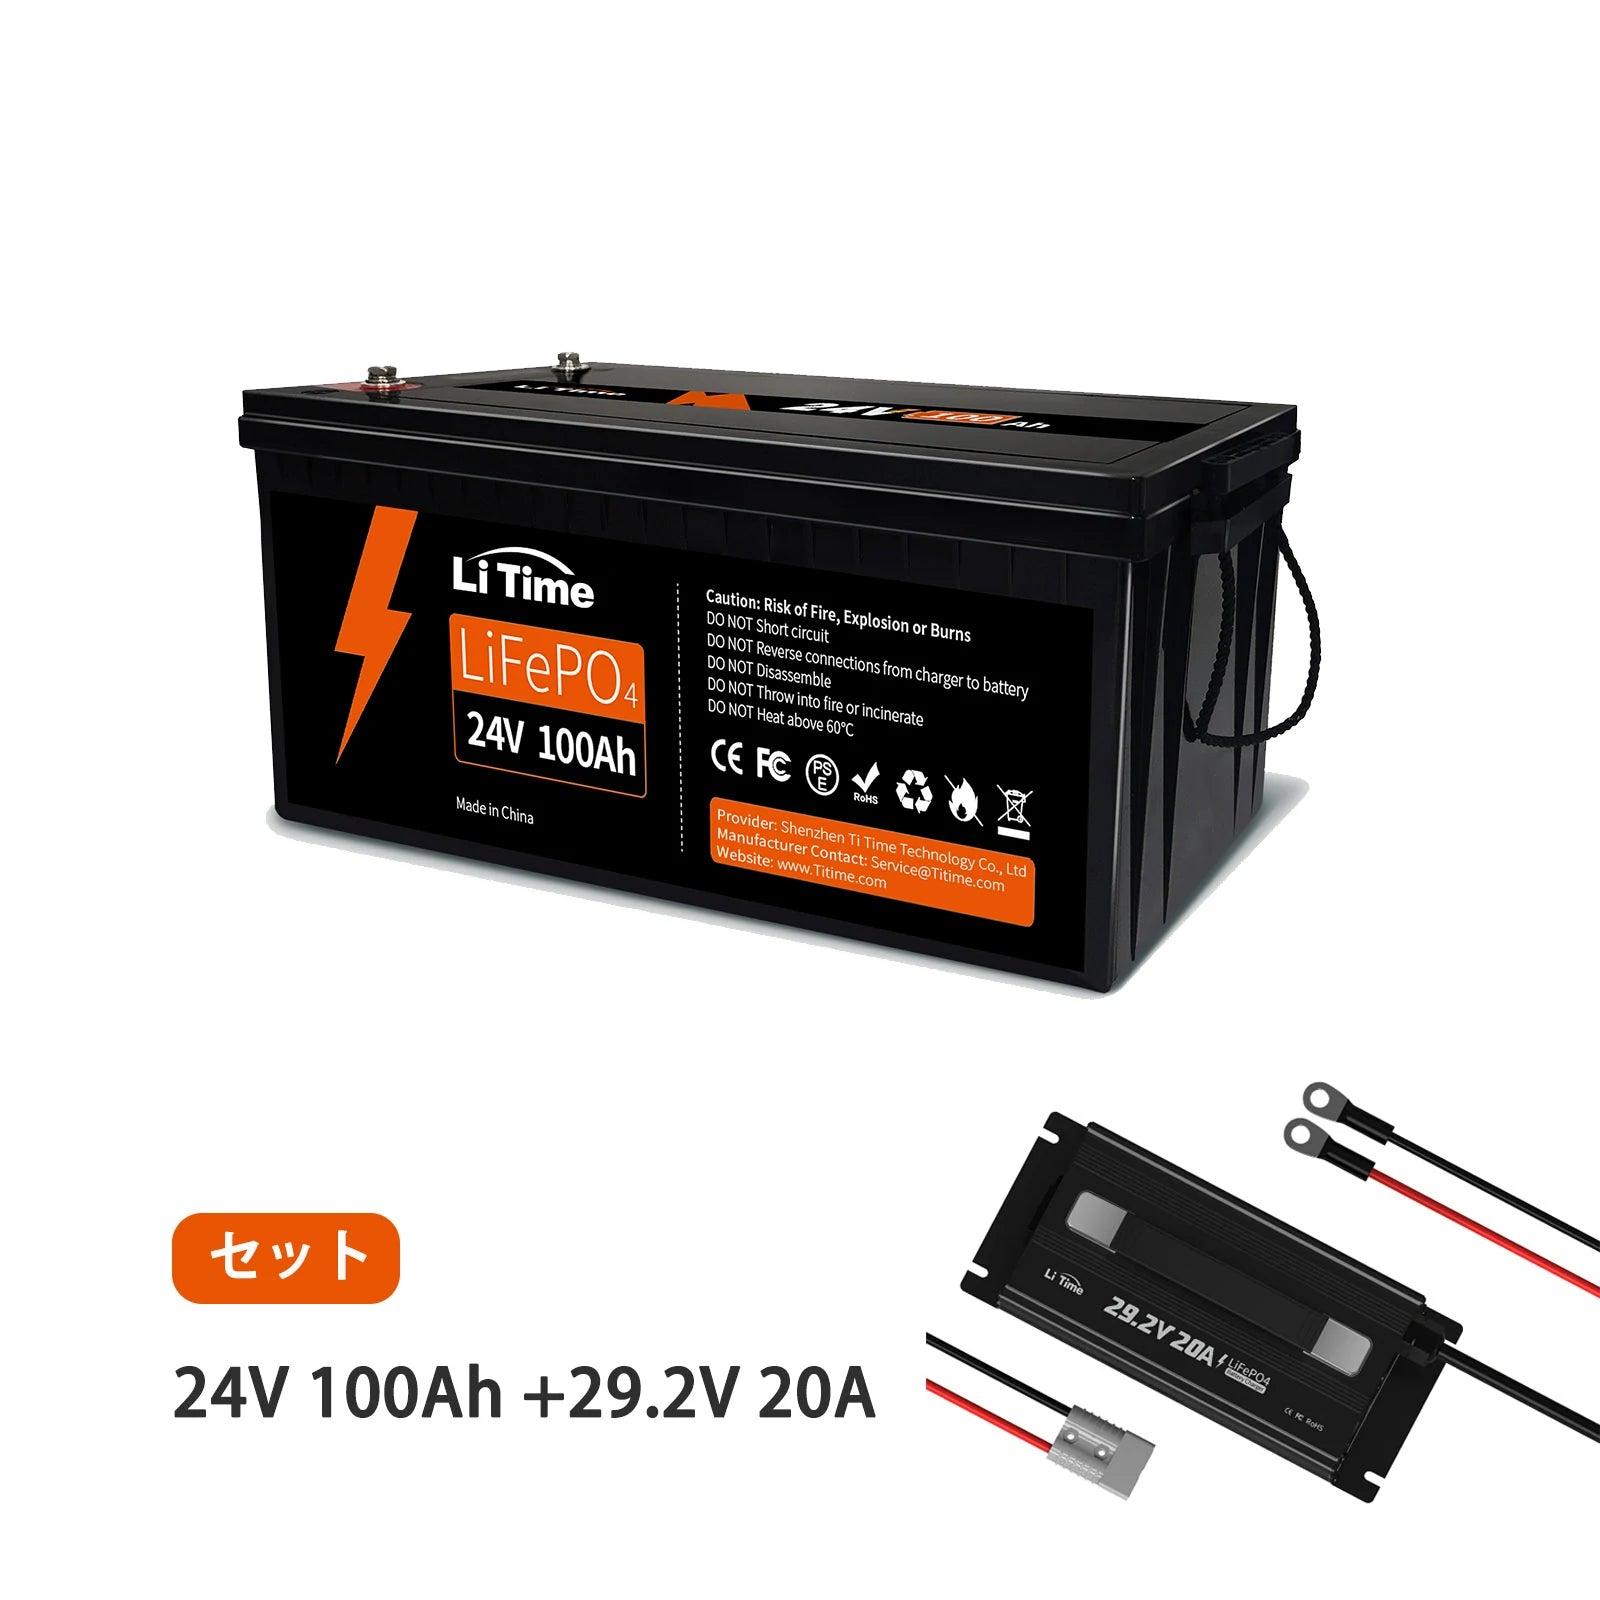 LiTime 24V 100Ah LiFePO4 リン酸鉄リチウムイオン 100ah バッテリー https://jp.litime.com/products/24v100ah